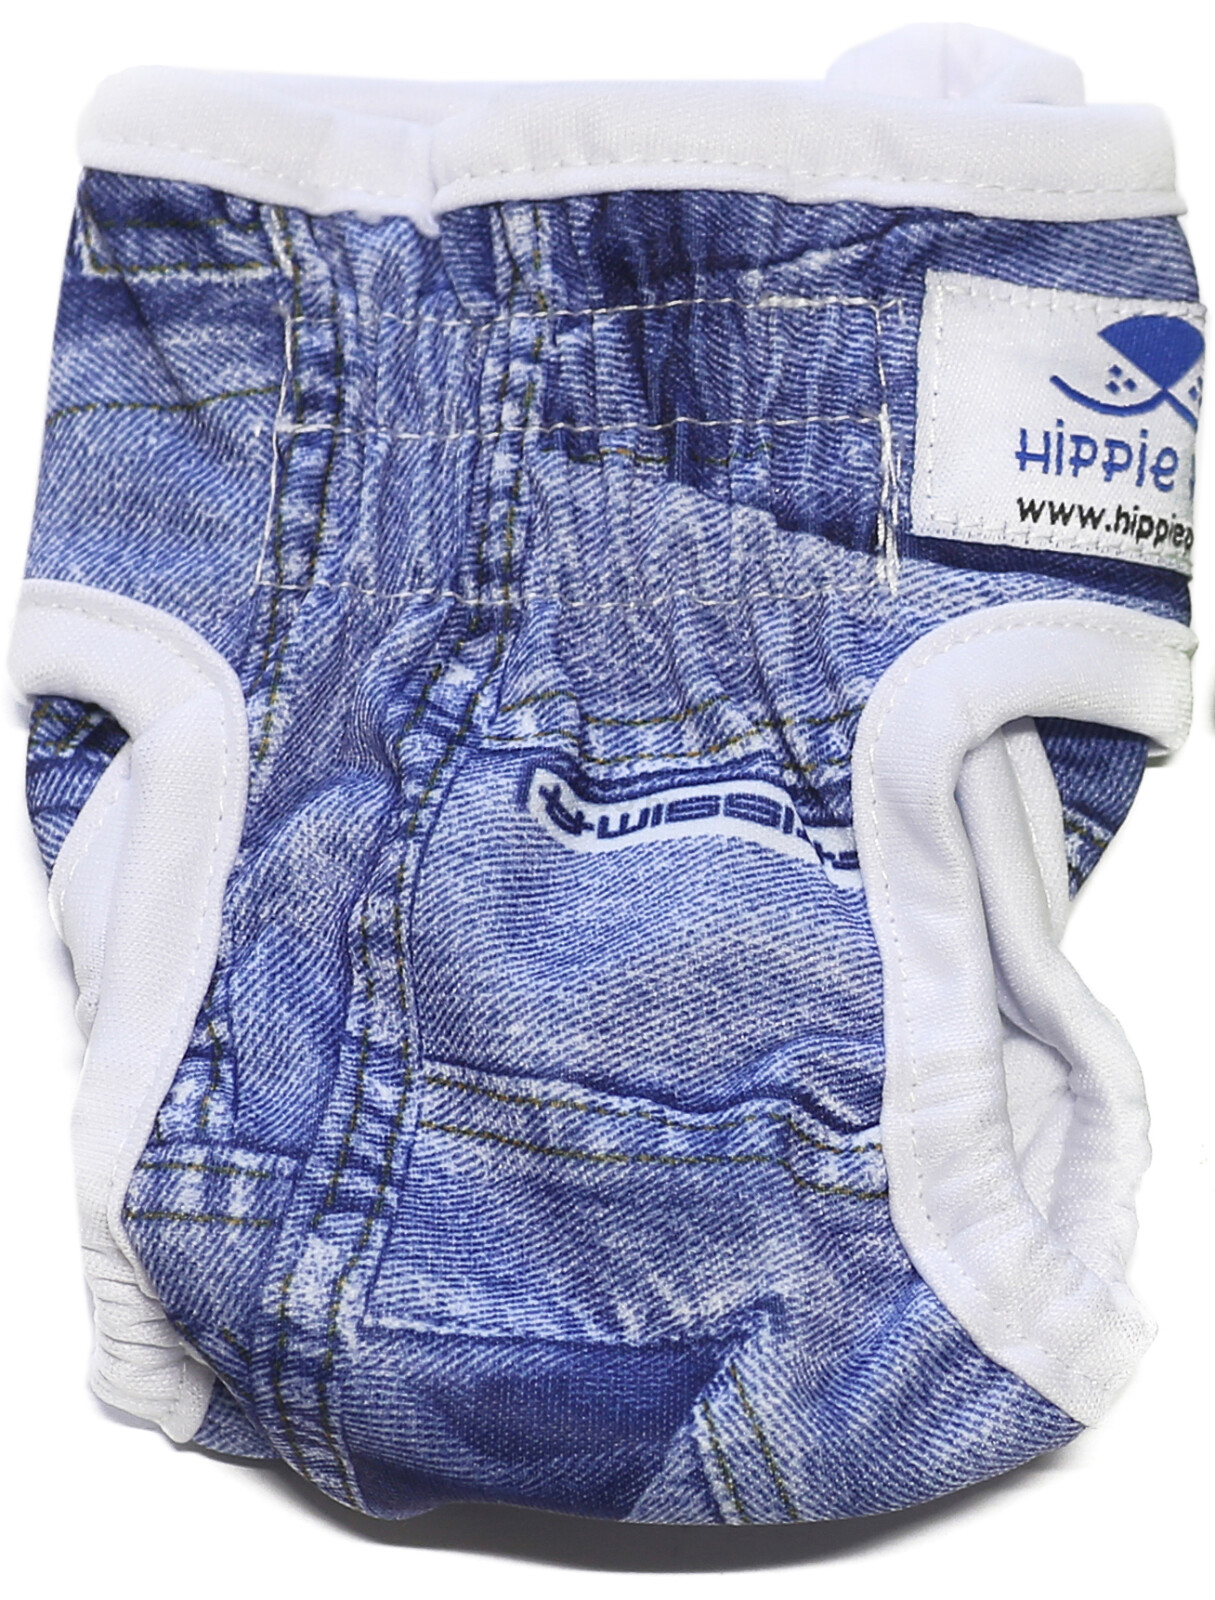 Подгузник многоразовый для сук HIPPIE PET XS имитация джинсовой ткани (UPBK3XS)